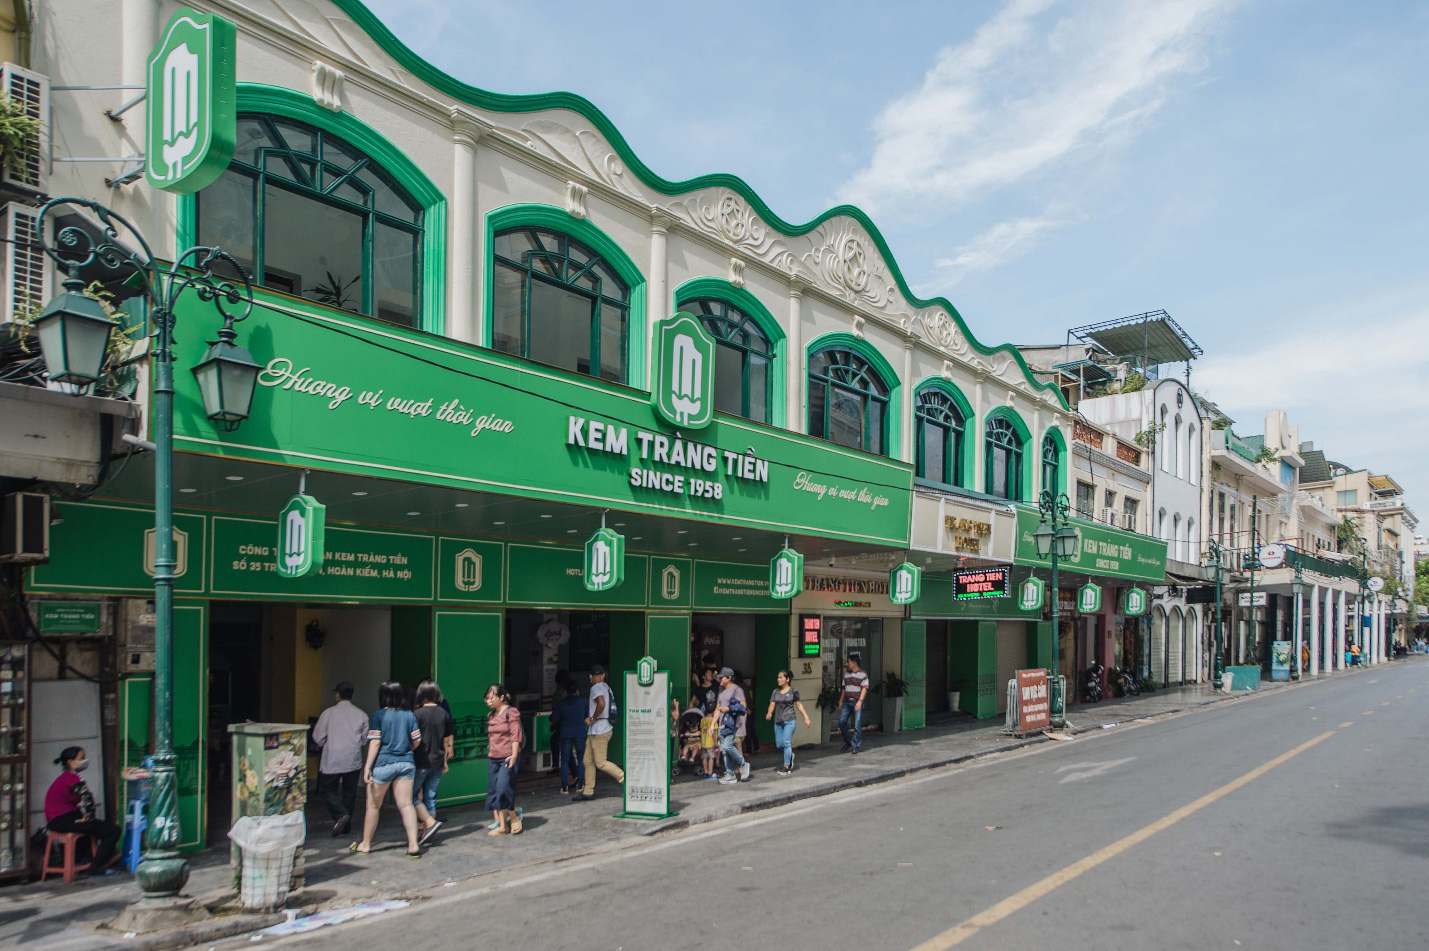 Cơ sở chính Kem Tràng Tiền ở số 35 Tràng Tiền, Q.Hoàn Kiếm, Hà Nội